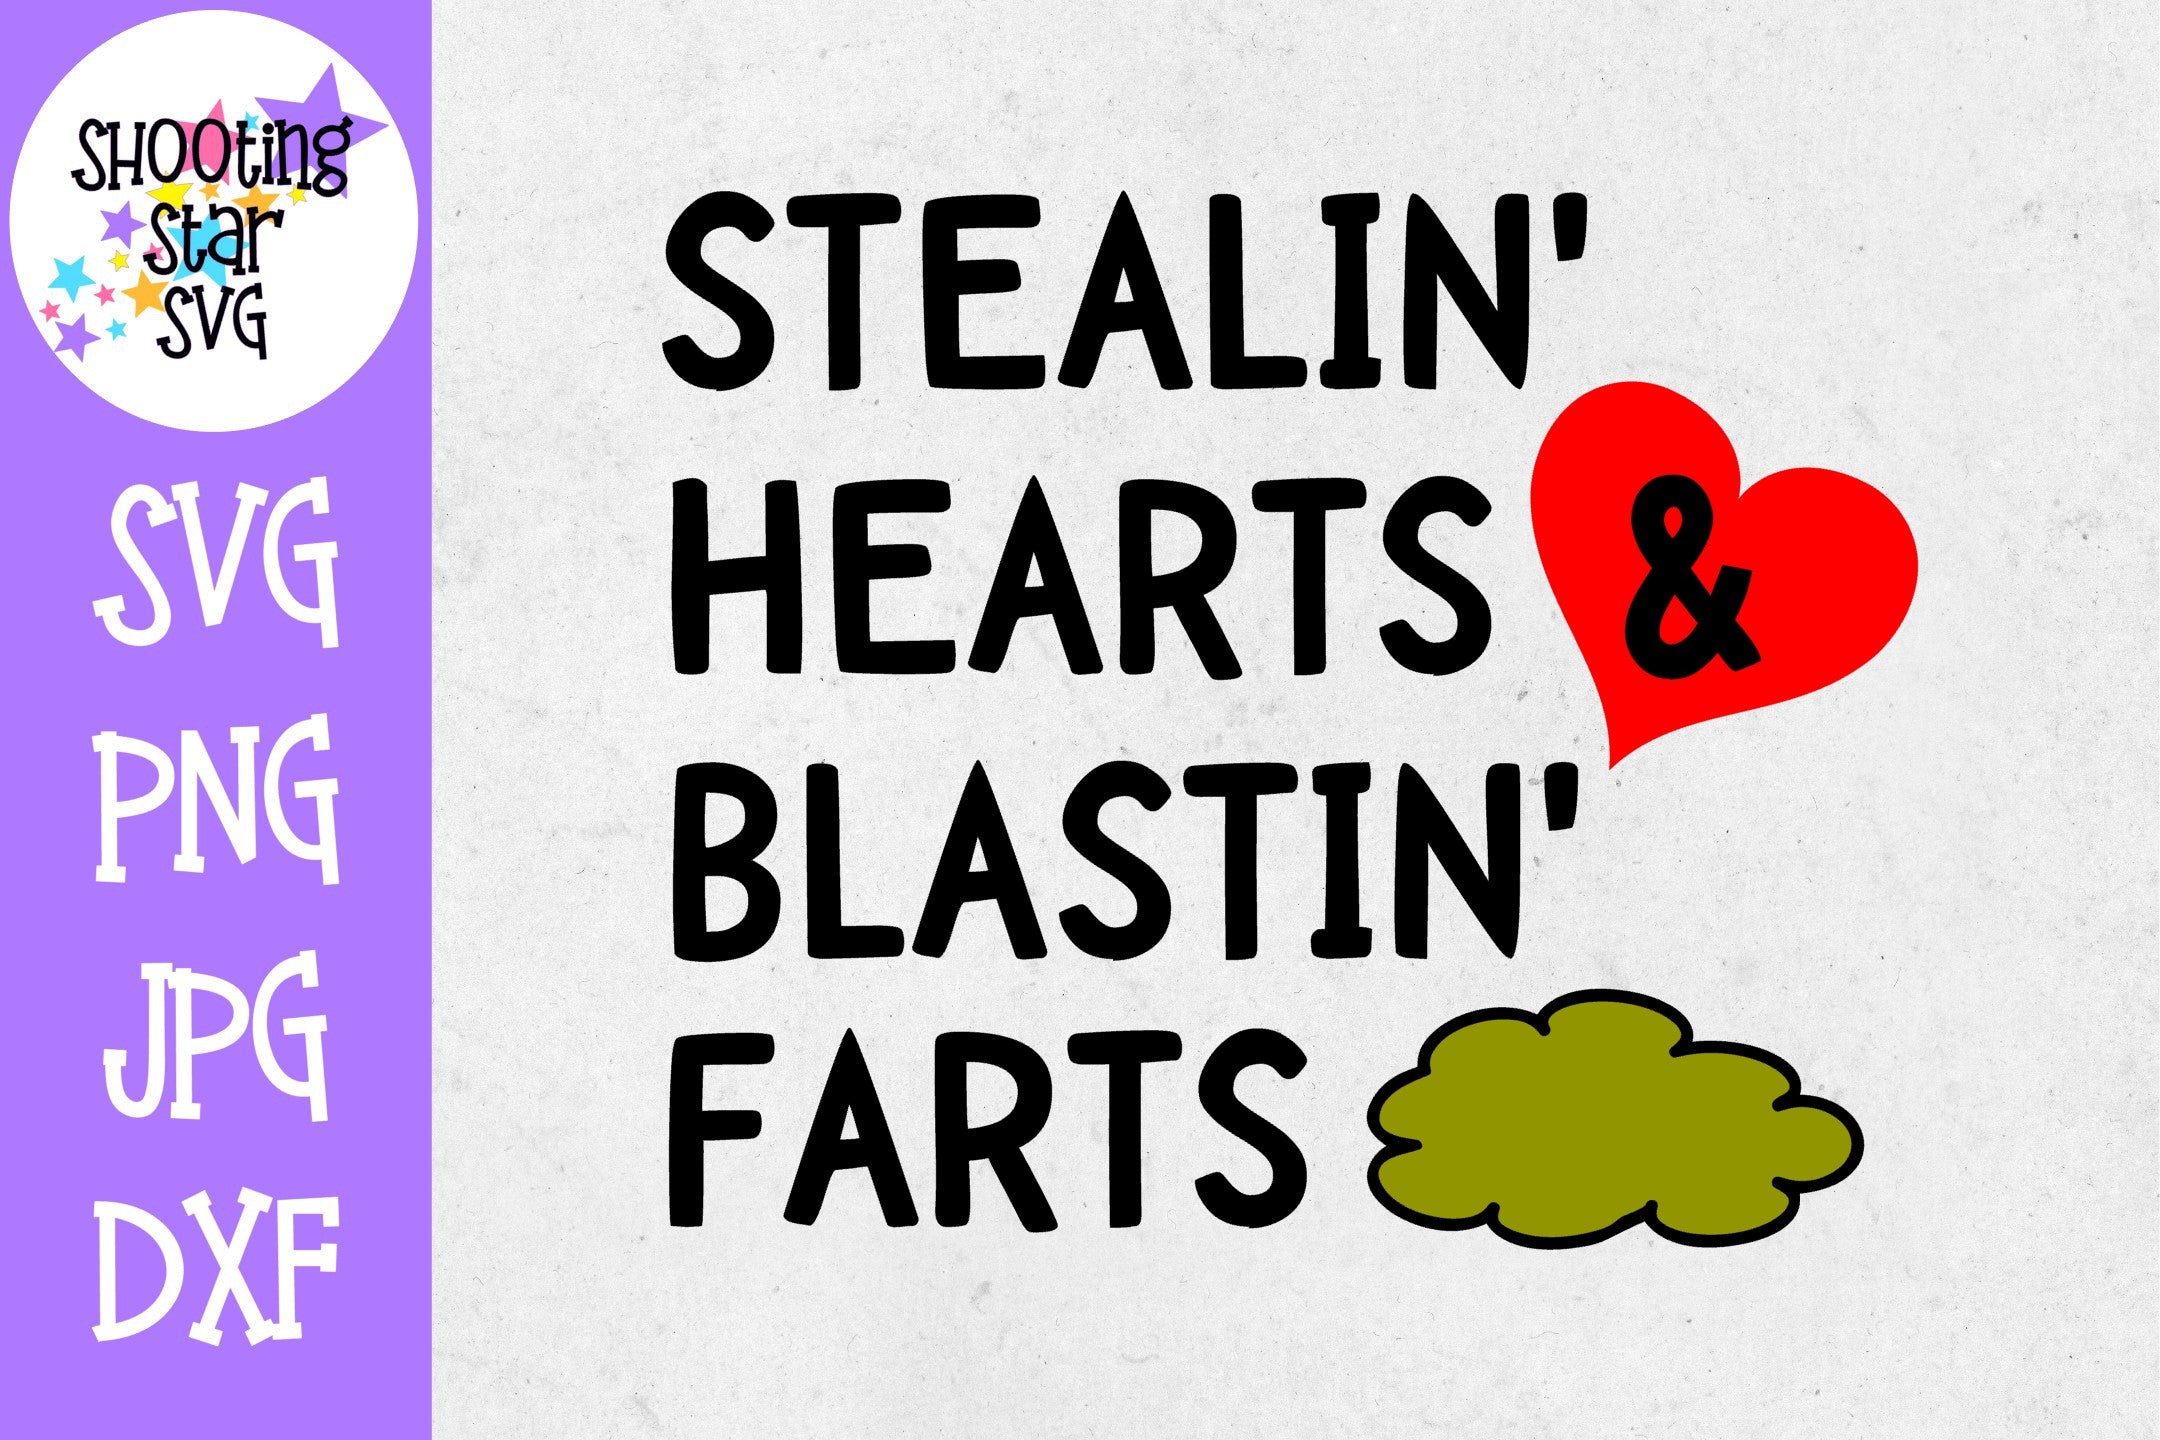 Stealin Hearts Blastin Farts SVG - Valentine's Day SVG